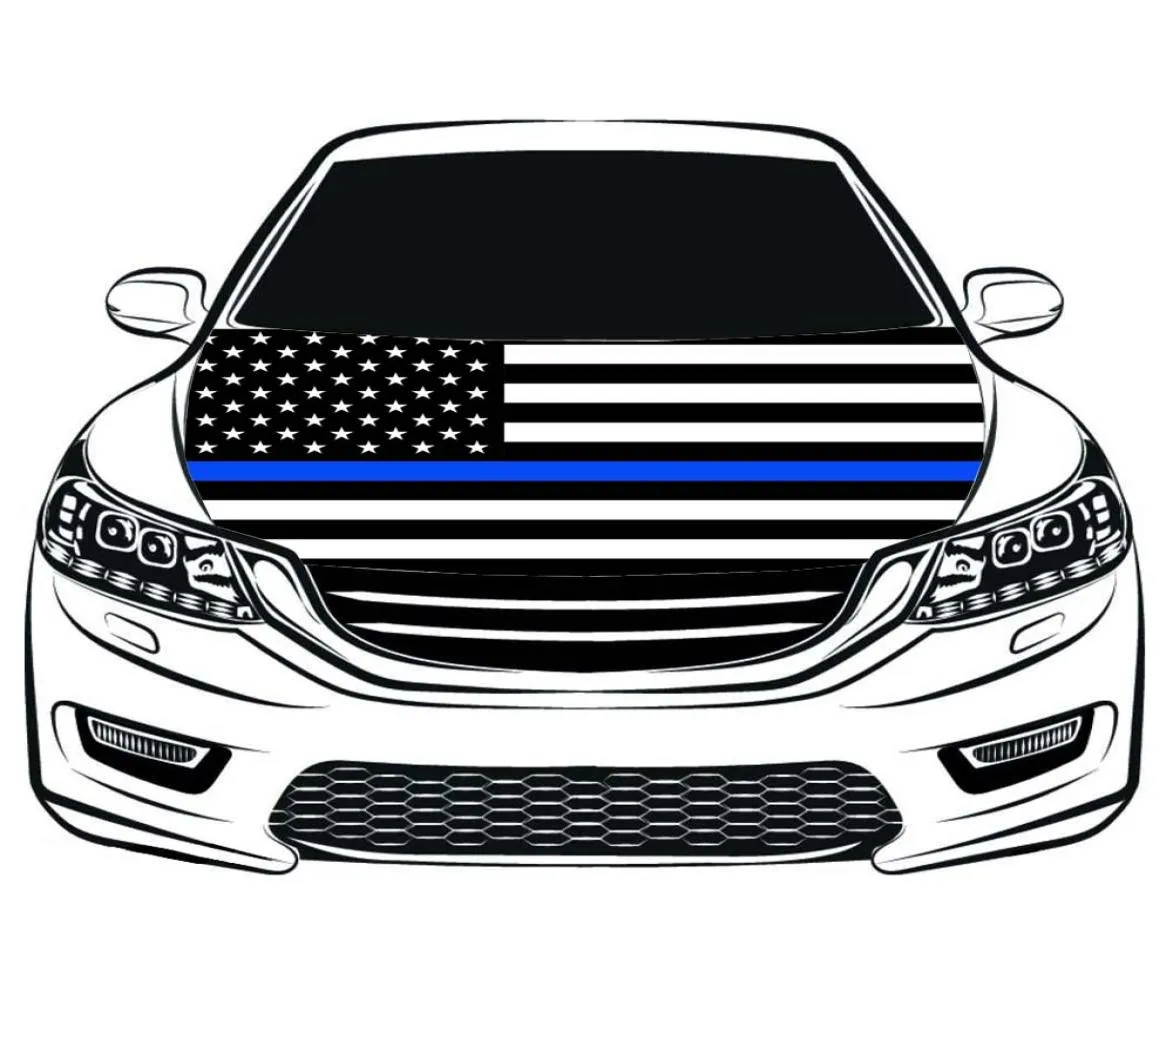 Dunne blauwe lijn VS nationale vlag auto kap cover 33x5ft 100polyesterEngine elastische stoffen kunnen worden gewassen1987681